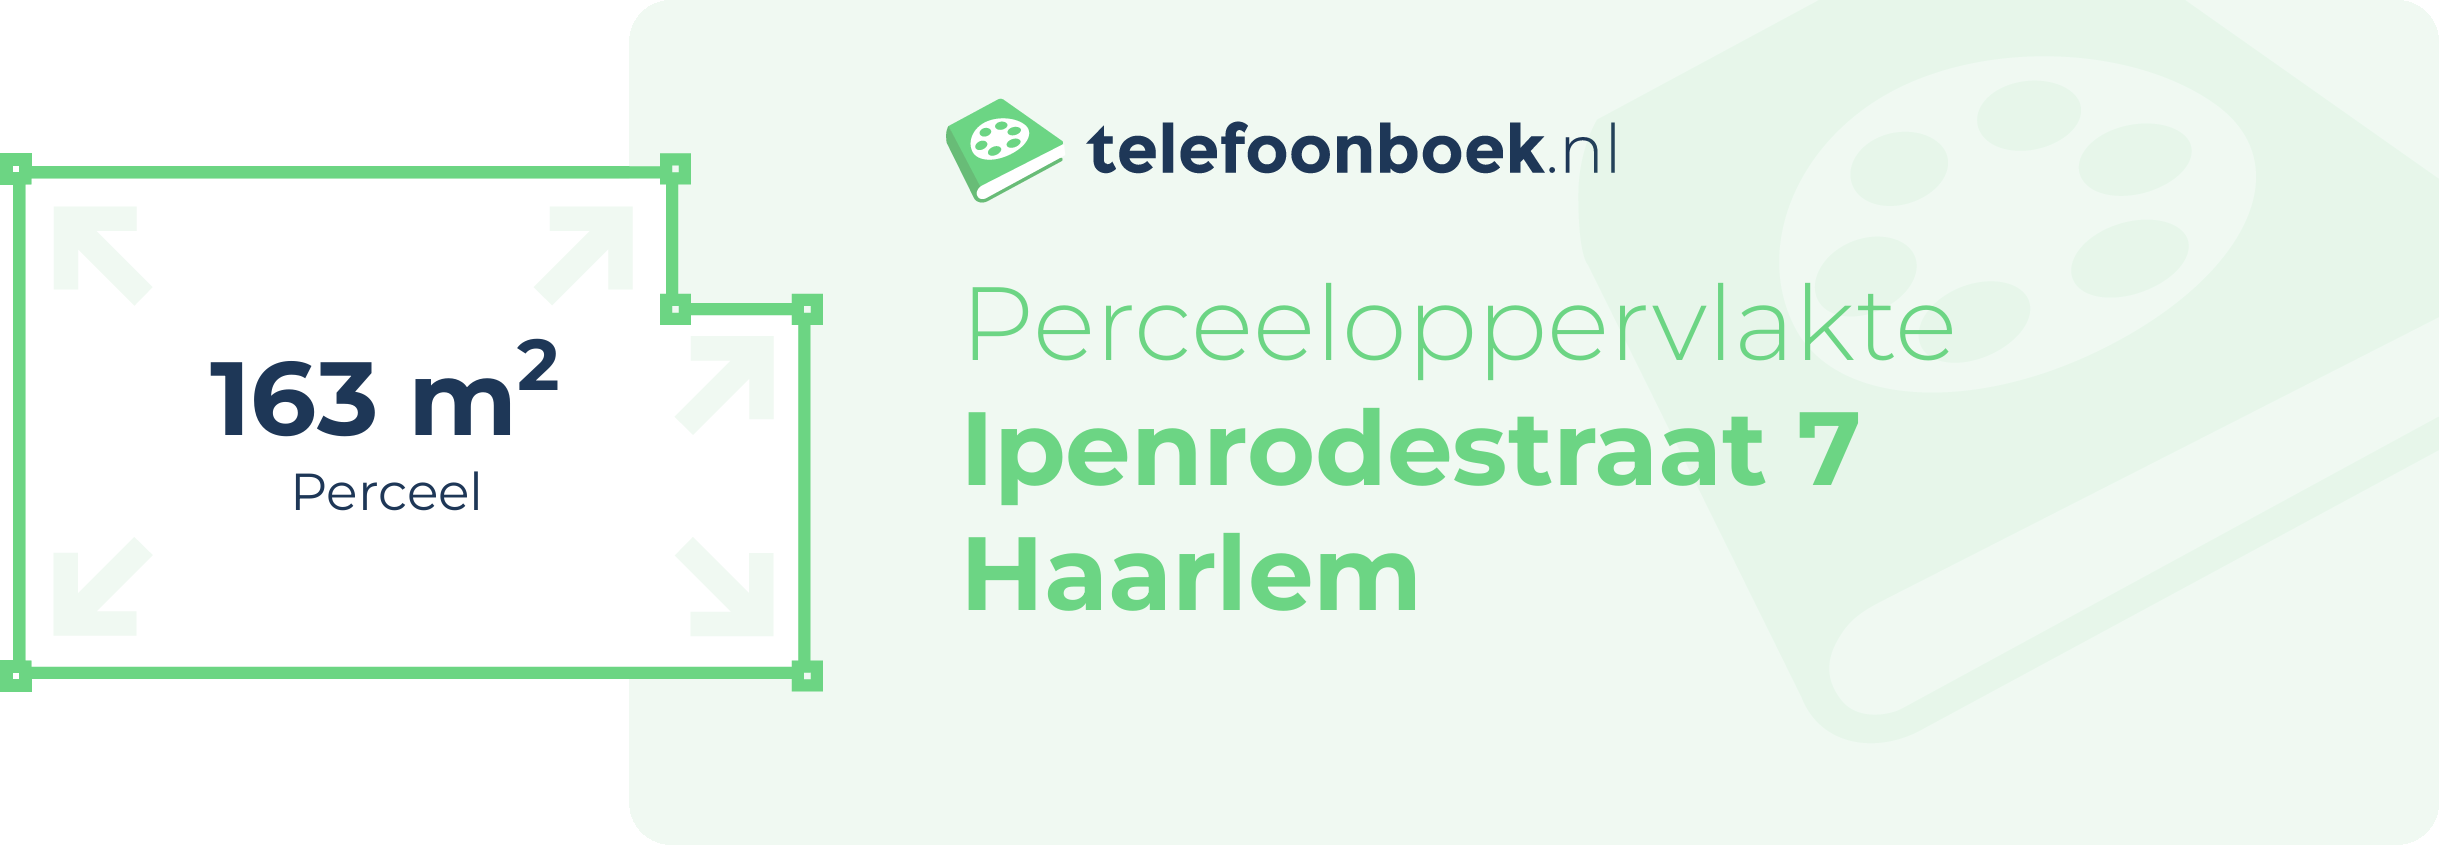 Perceeloppervlakte Ipenrodestraat 7 Haarlem